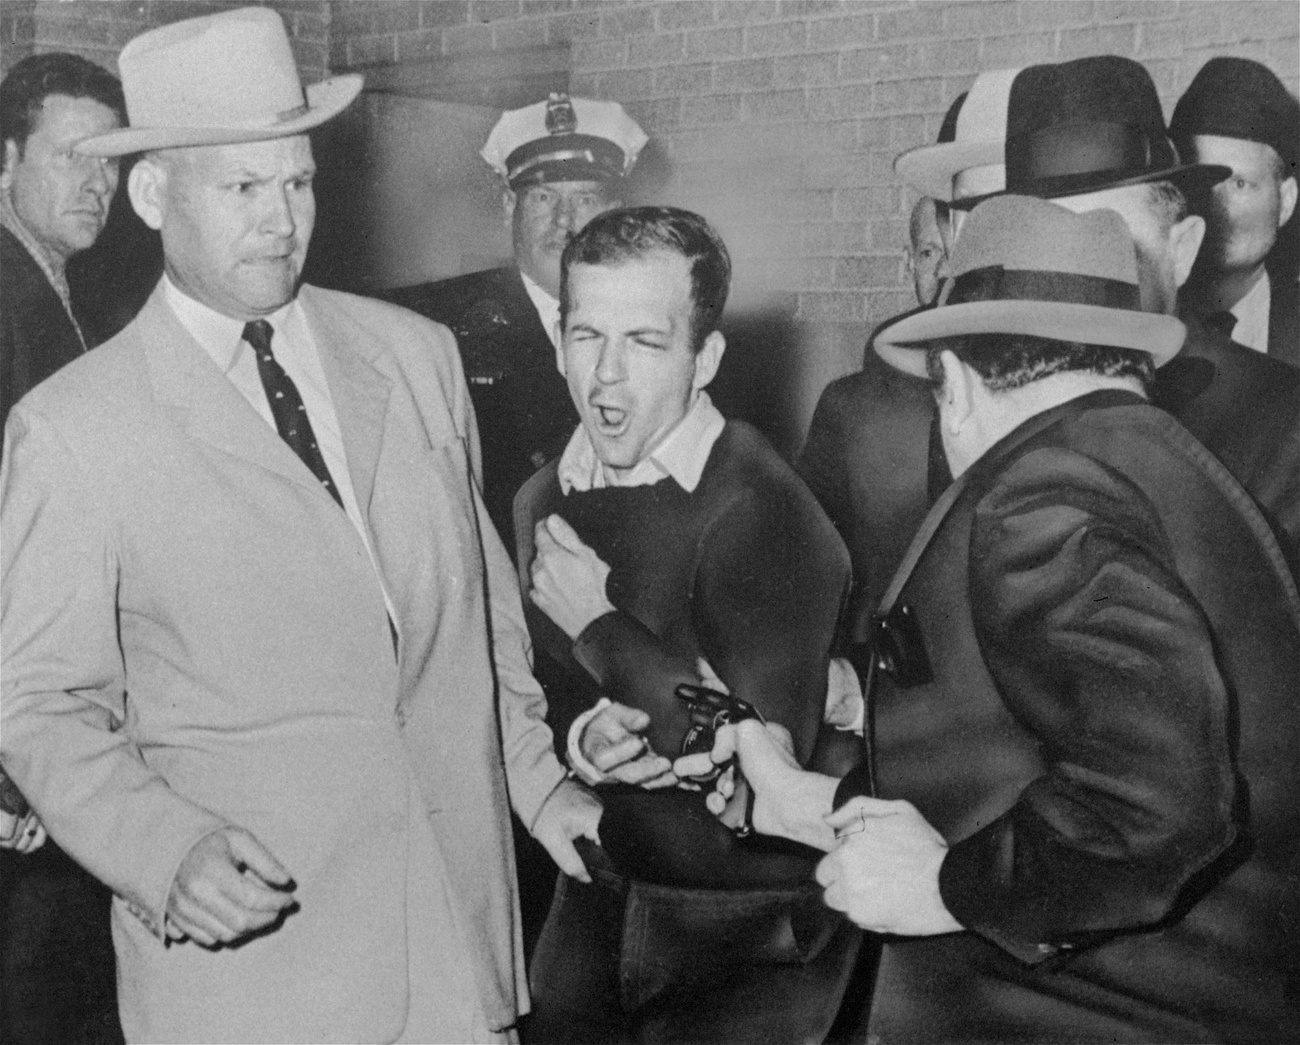 Lee Harvey Oswald (au centre), l'assassin présumé du président John F. Kennedy, est abattu le 24 novembre 1963 dans un couloir du quartier général de la police de Dallas par Jack Ruby (de dos, à droite), propriétaire d'une boîte de nuit. Avant son procès, Ruby a déclaré: "On ne saura jamais la vérité, ni pourquoi j'ai agi. Les personnes qui ont tant à gagner et un motif puissant pour me mettre où je suis ne laisseront jamais éclater la vérité."